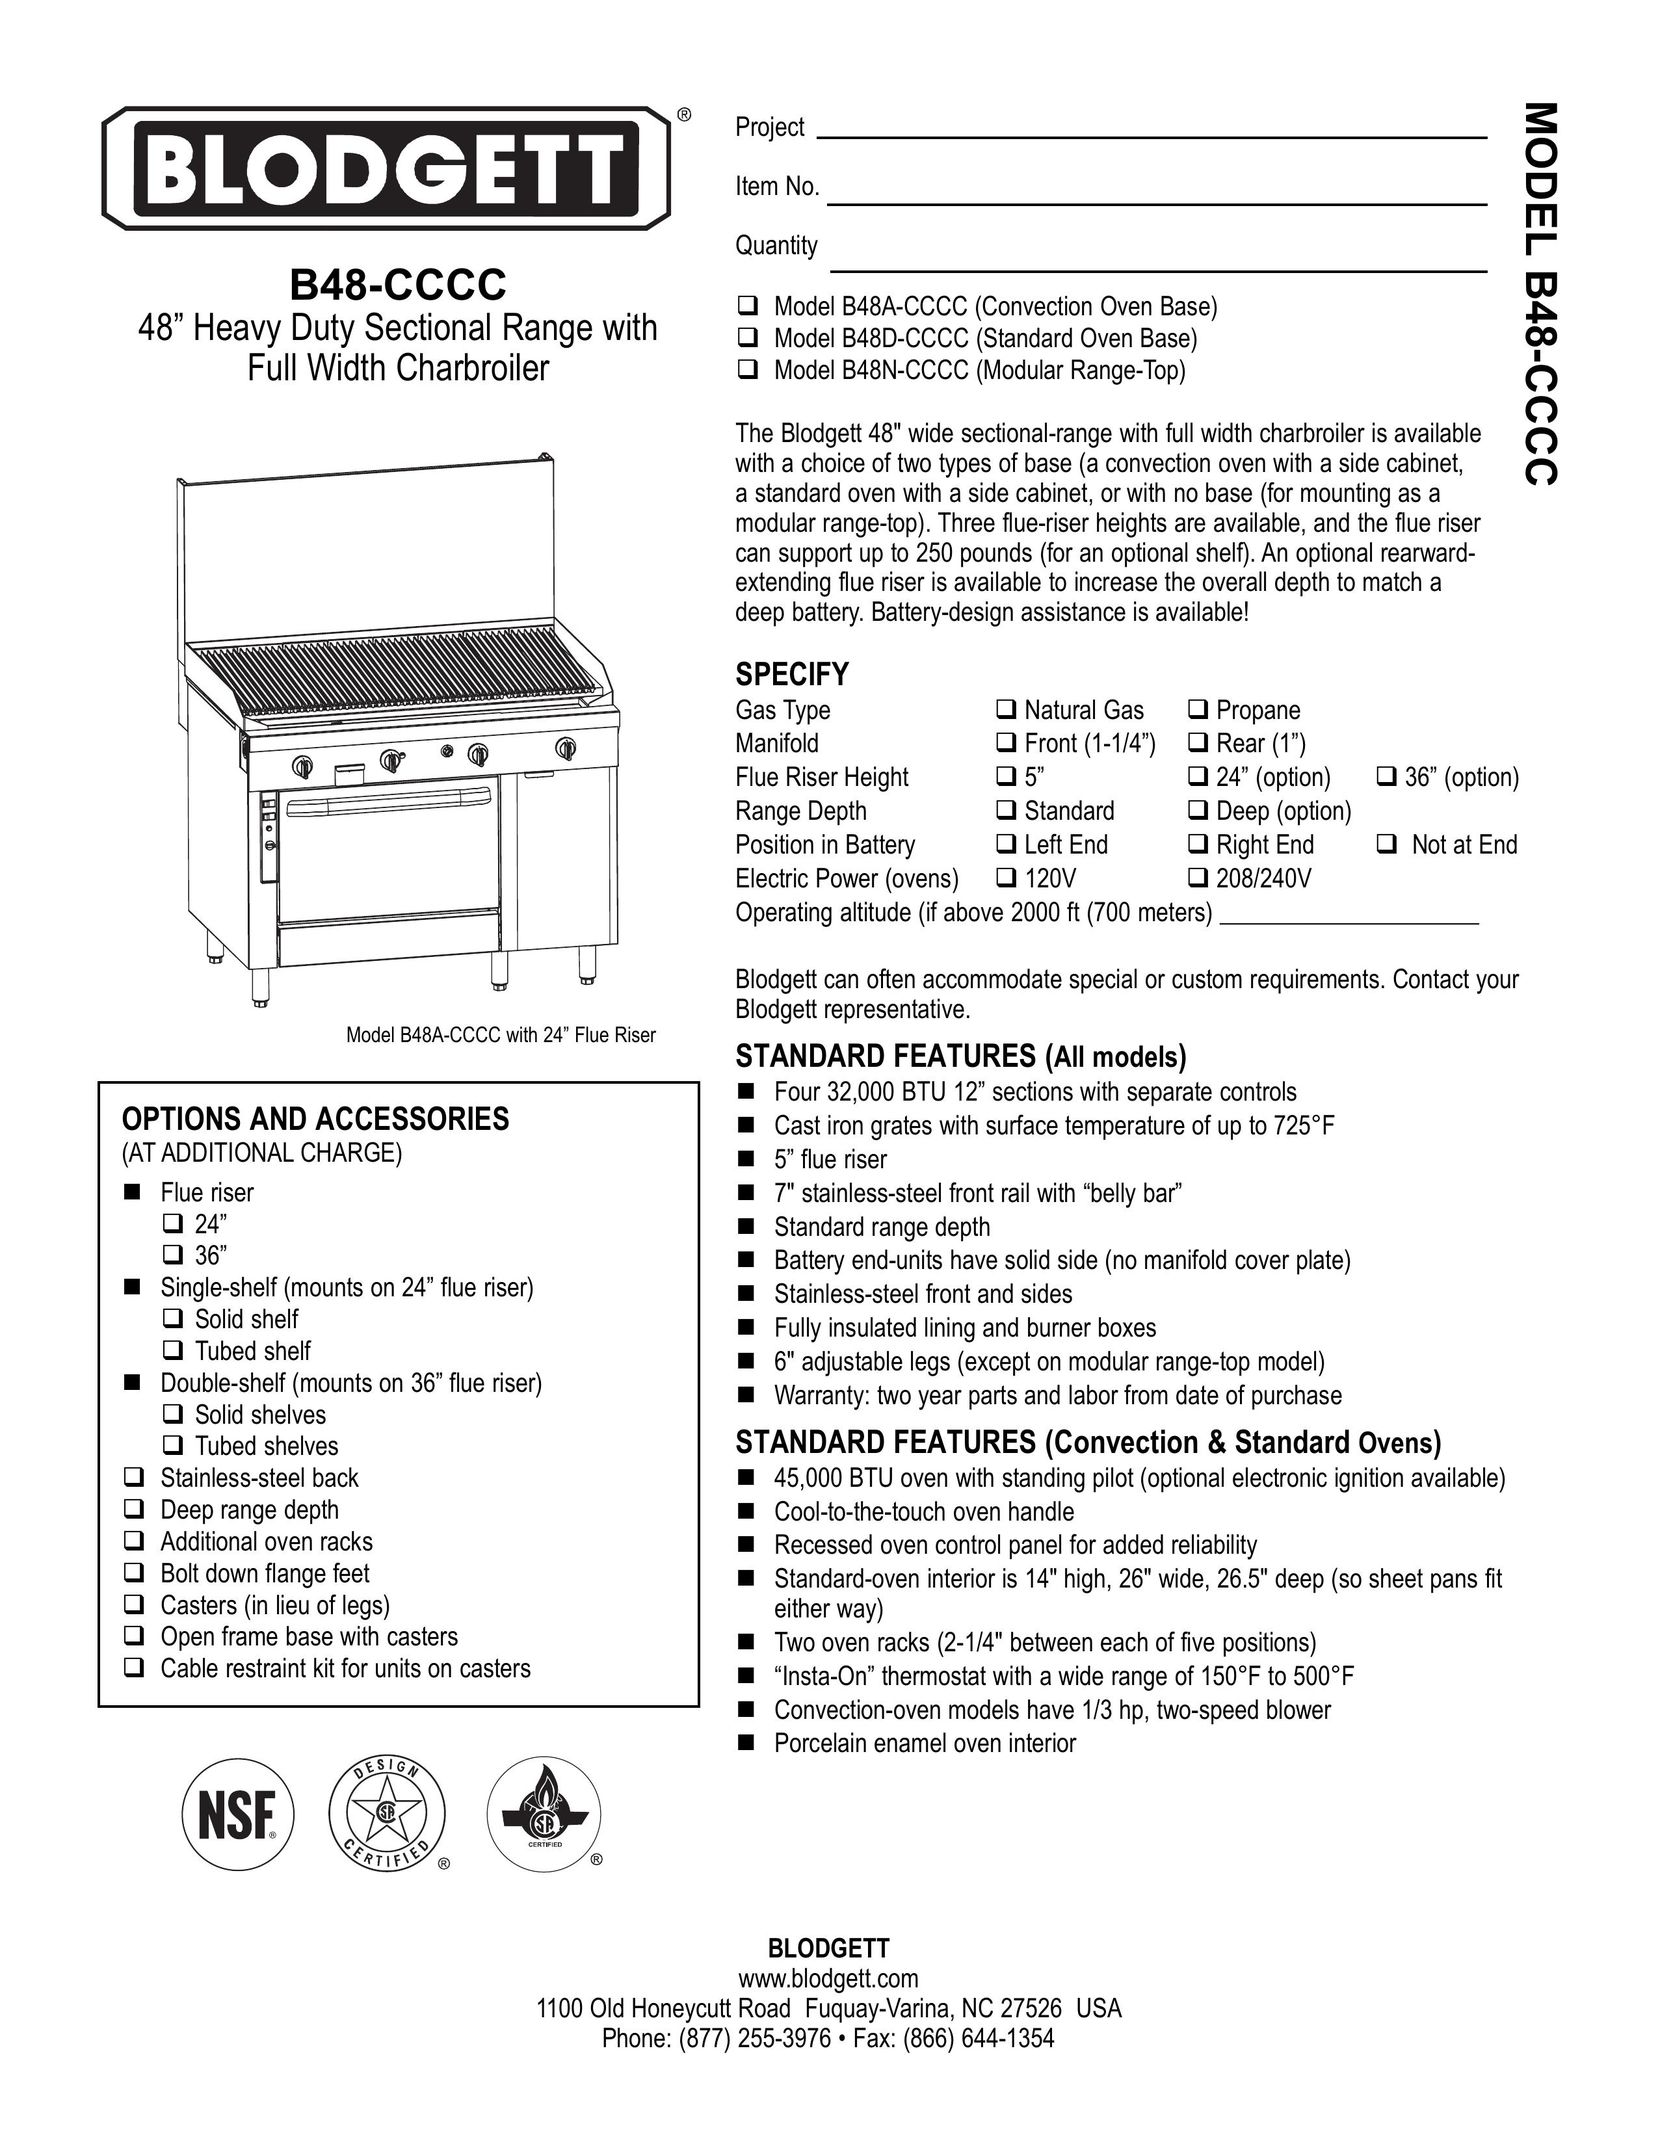 Blodgett B48D-CCCC Oven User Manual